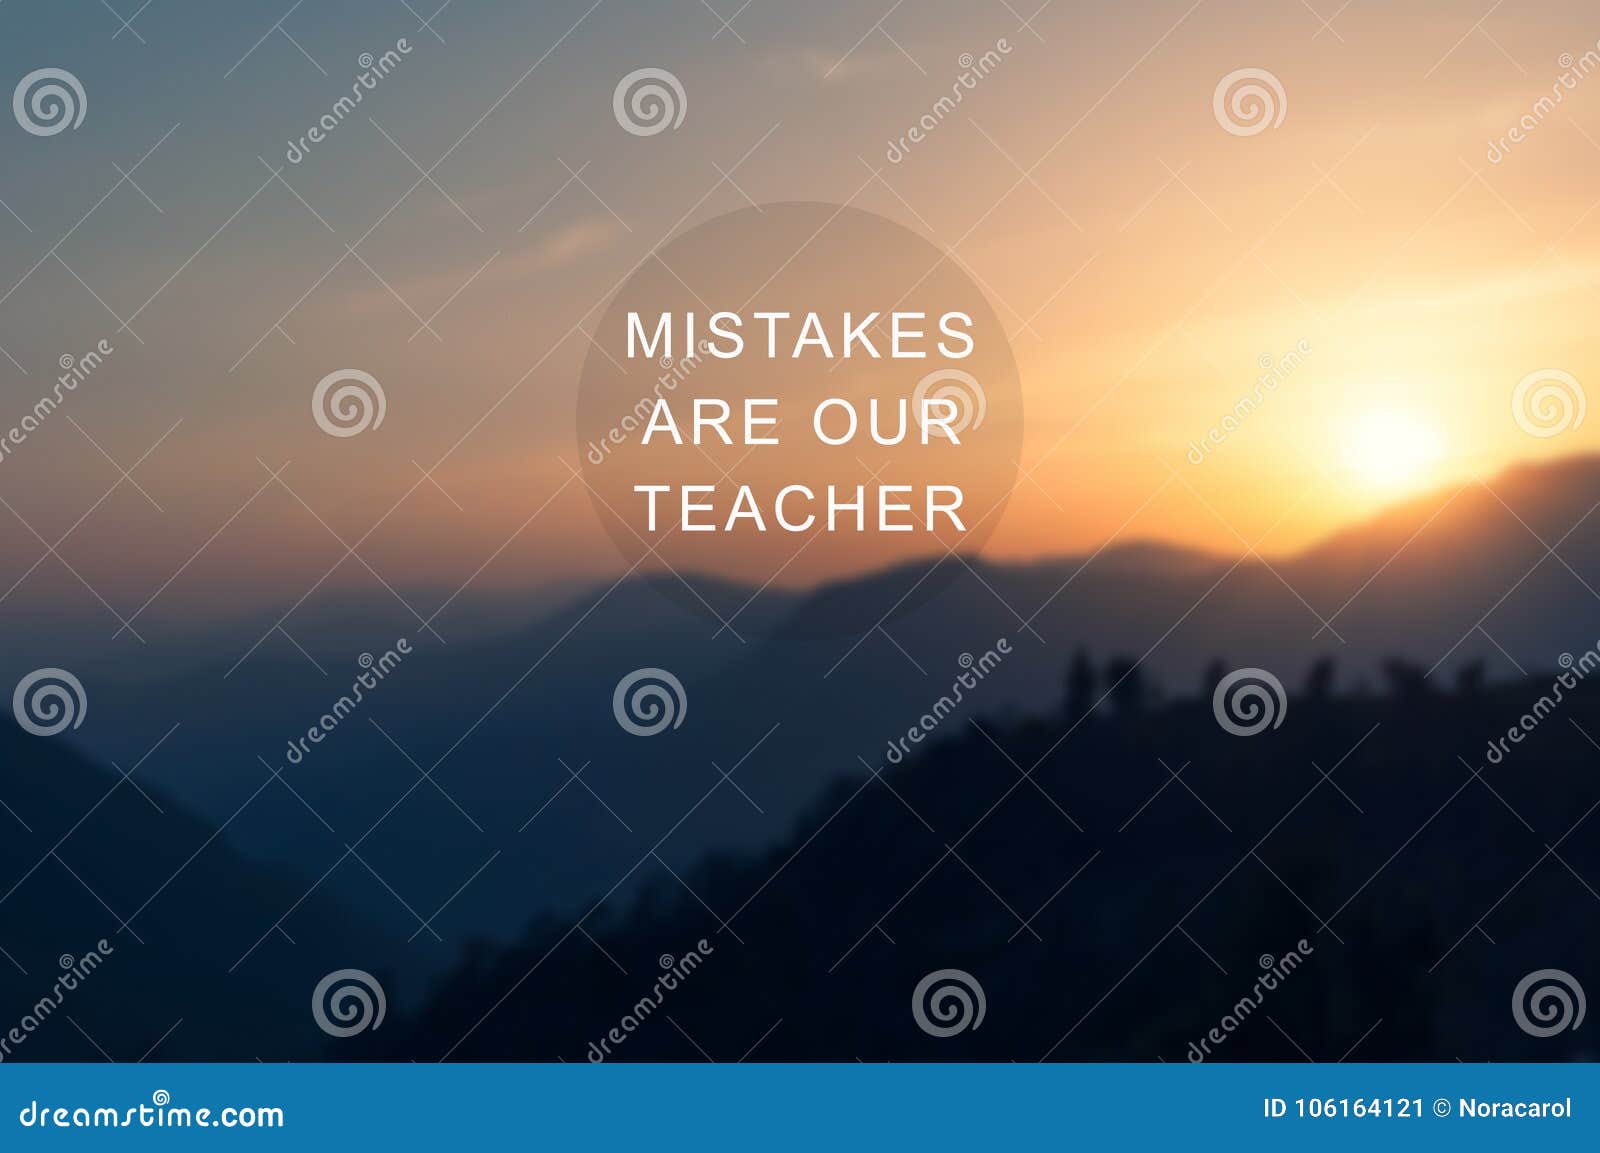 mistakes are our teacher